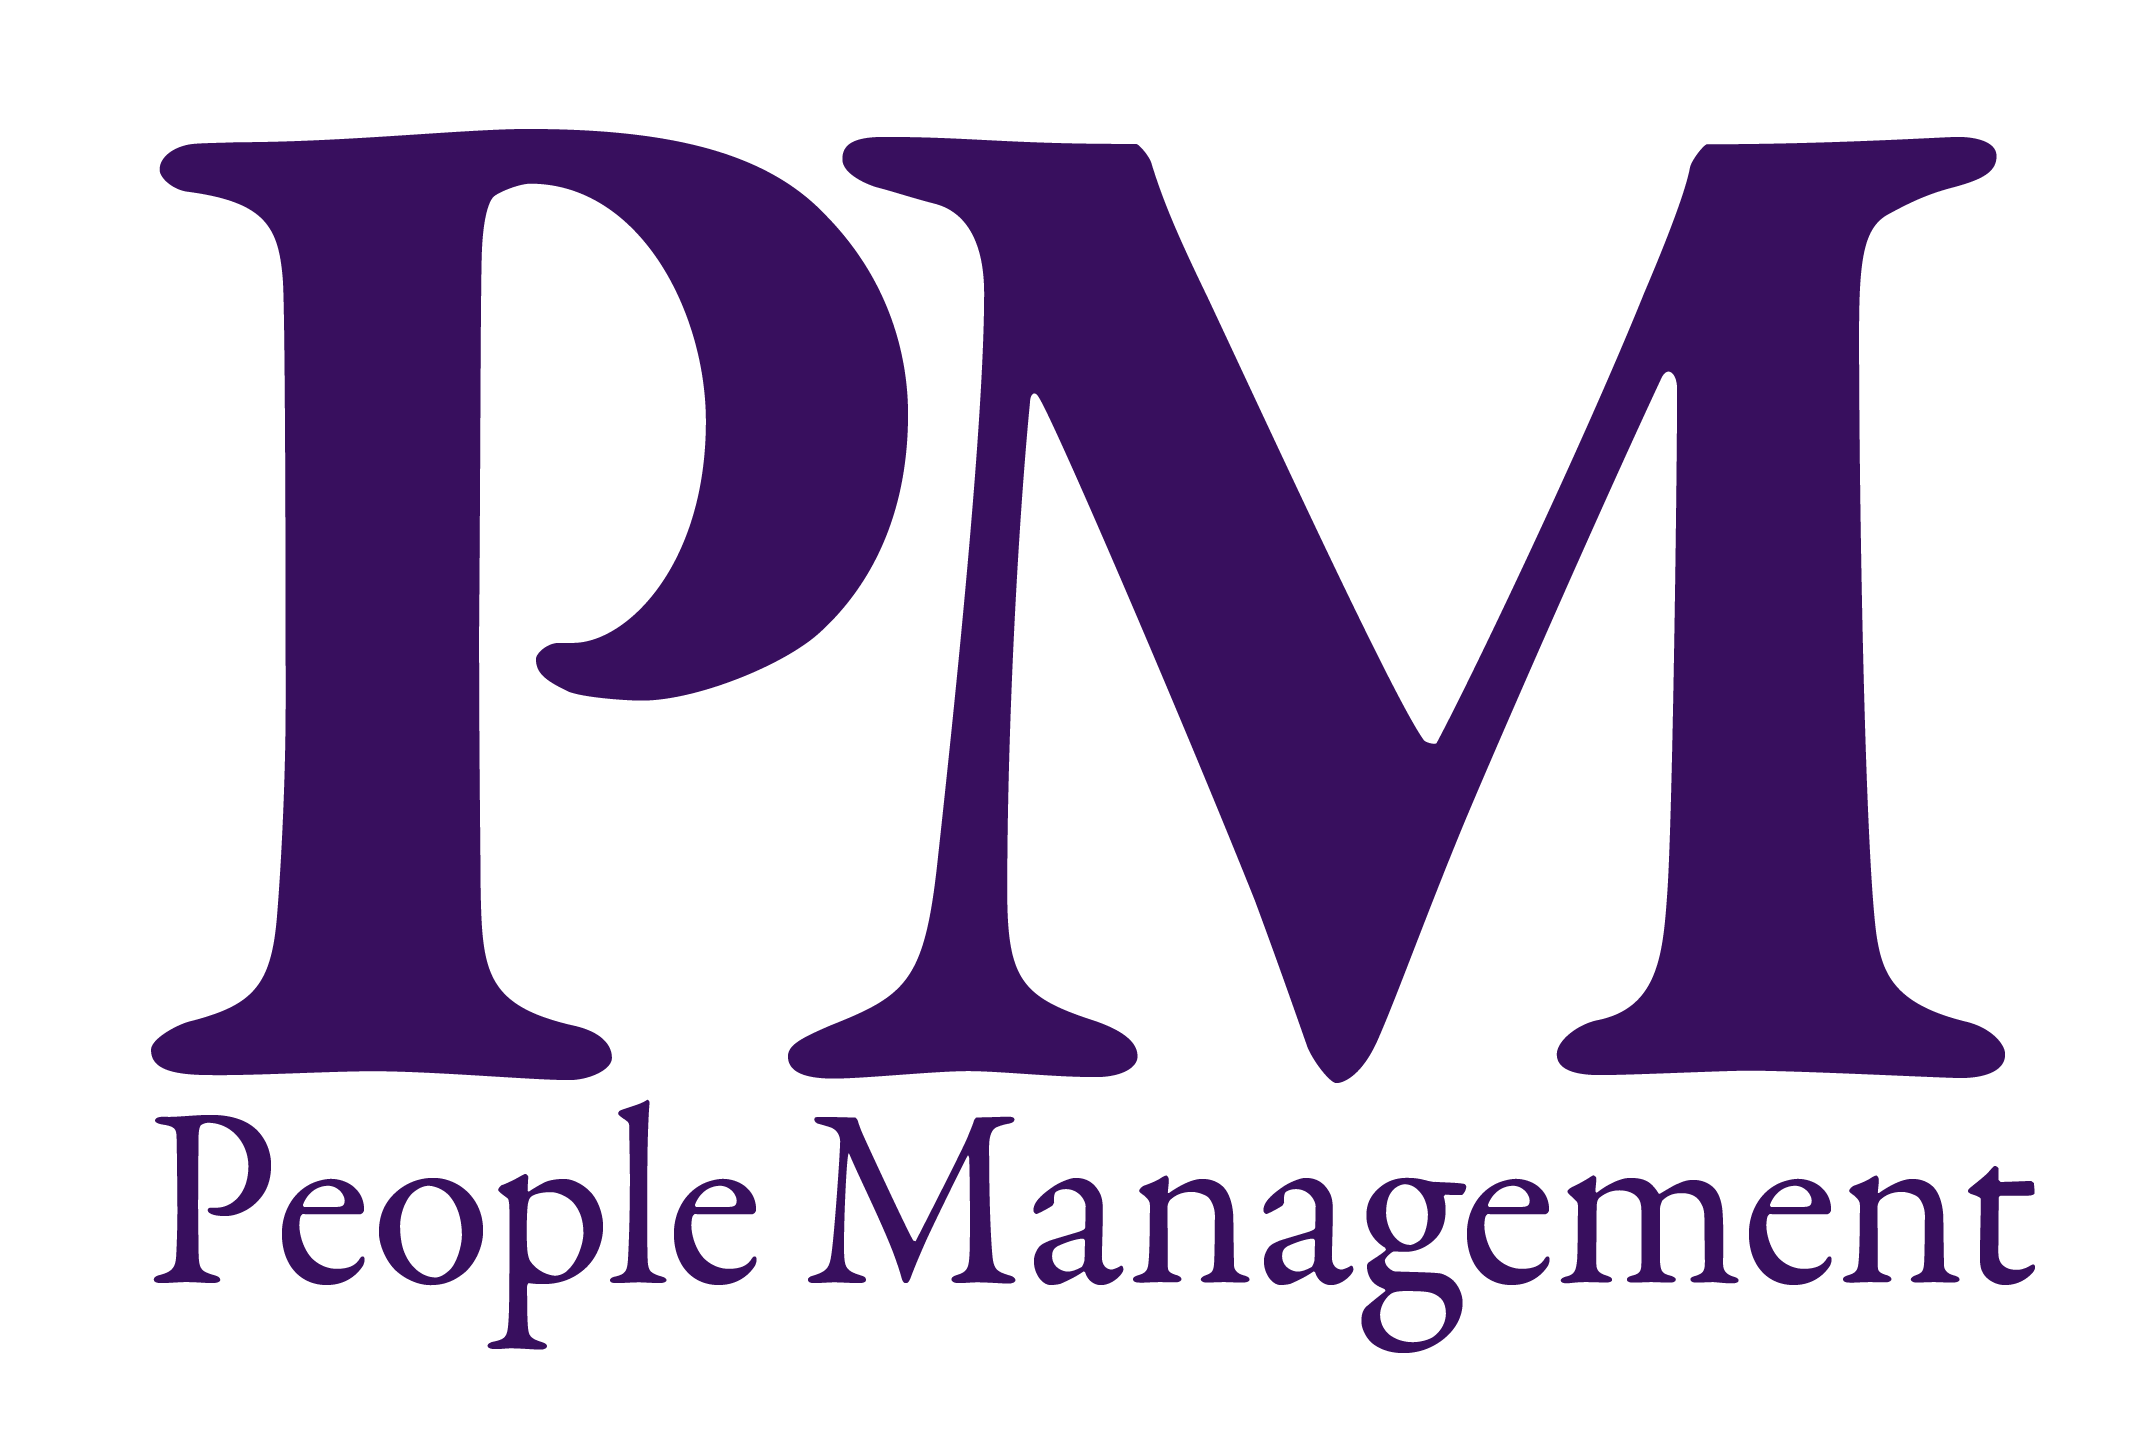 PM logo.png